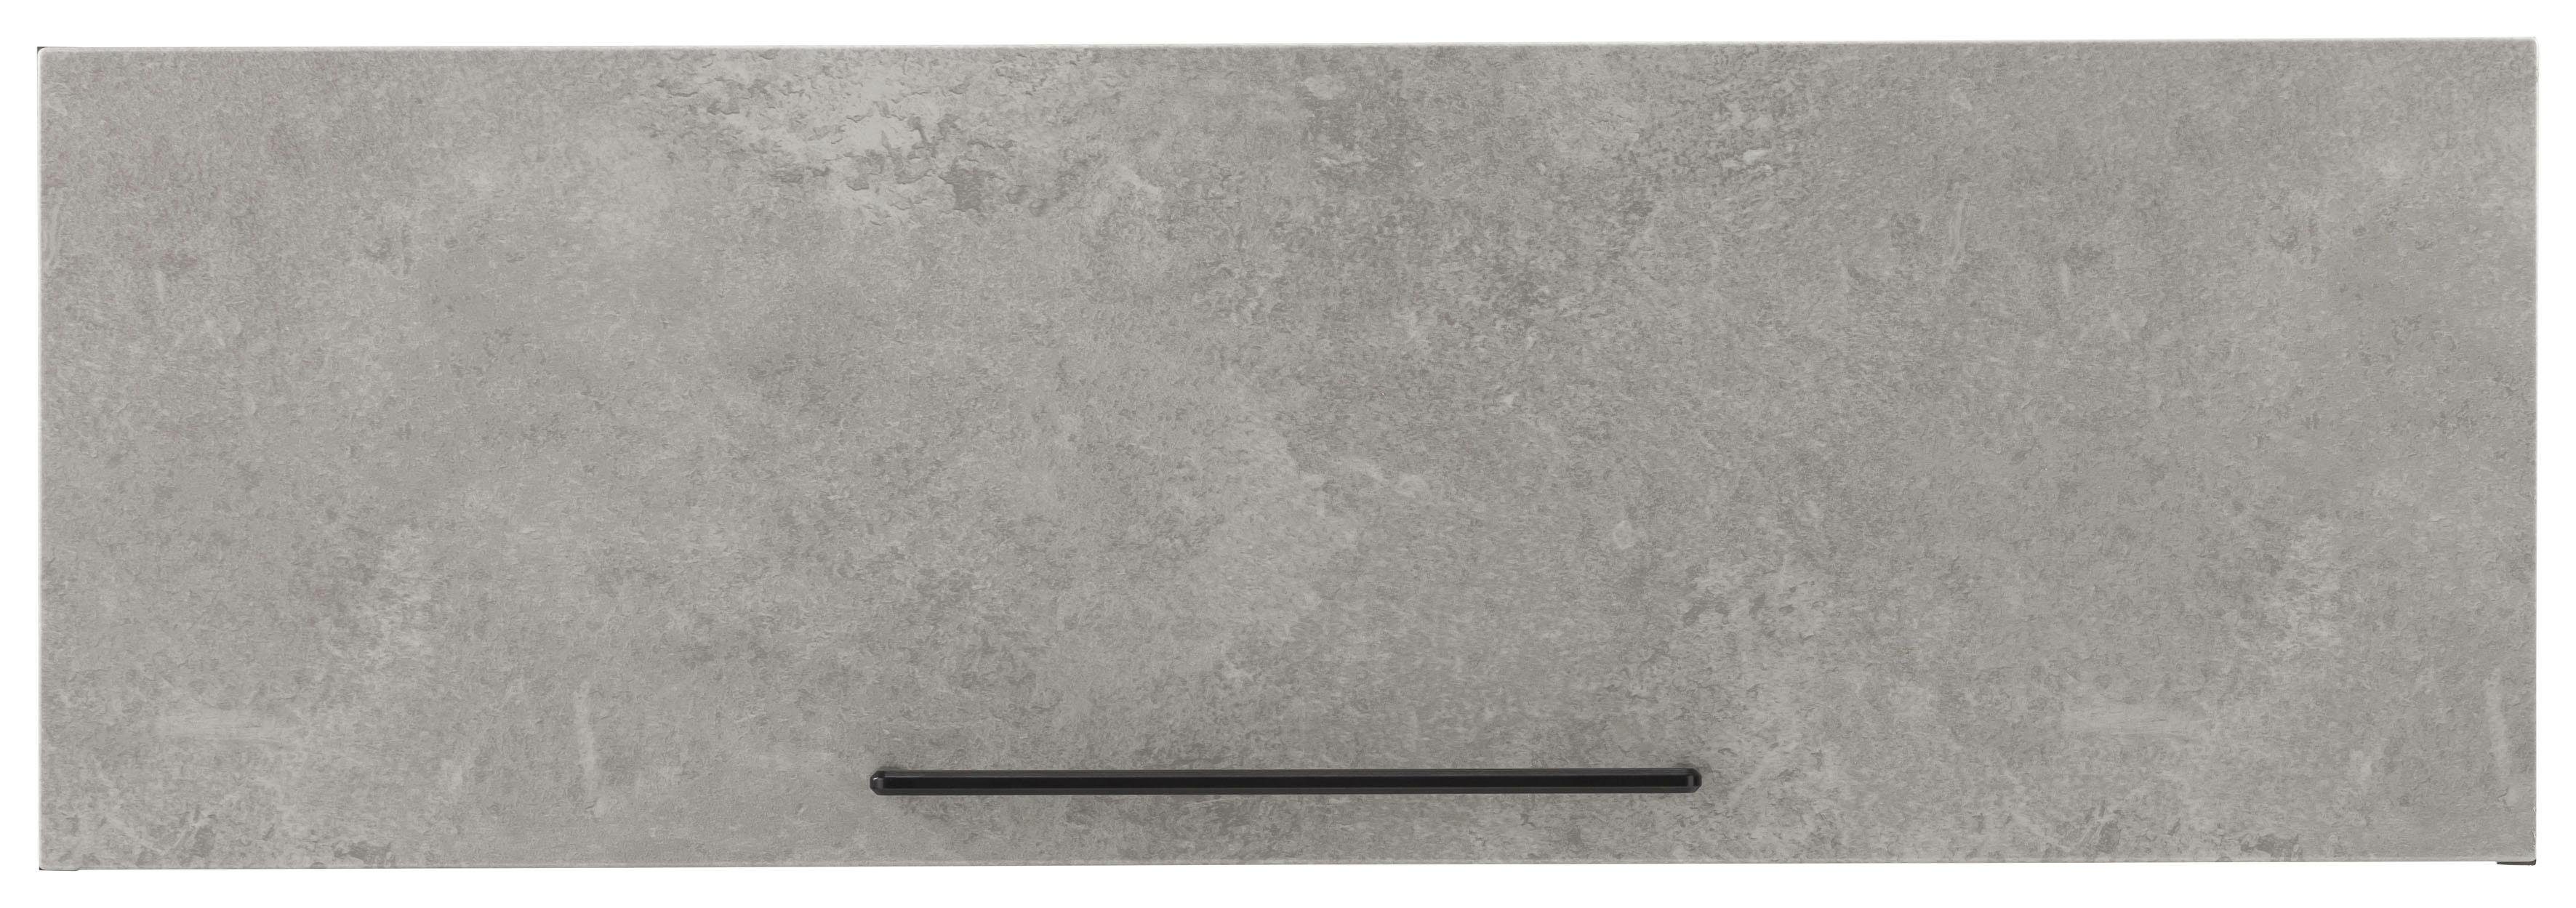 HELD MÖBEL Klapphängeschrank Tulsa 100 MDF 1 | breit, hell Klappe, mit betonfarben cm Front schwarzer grafit Metallgriff